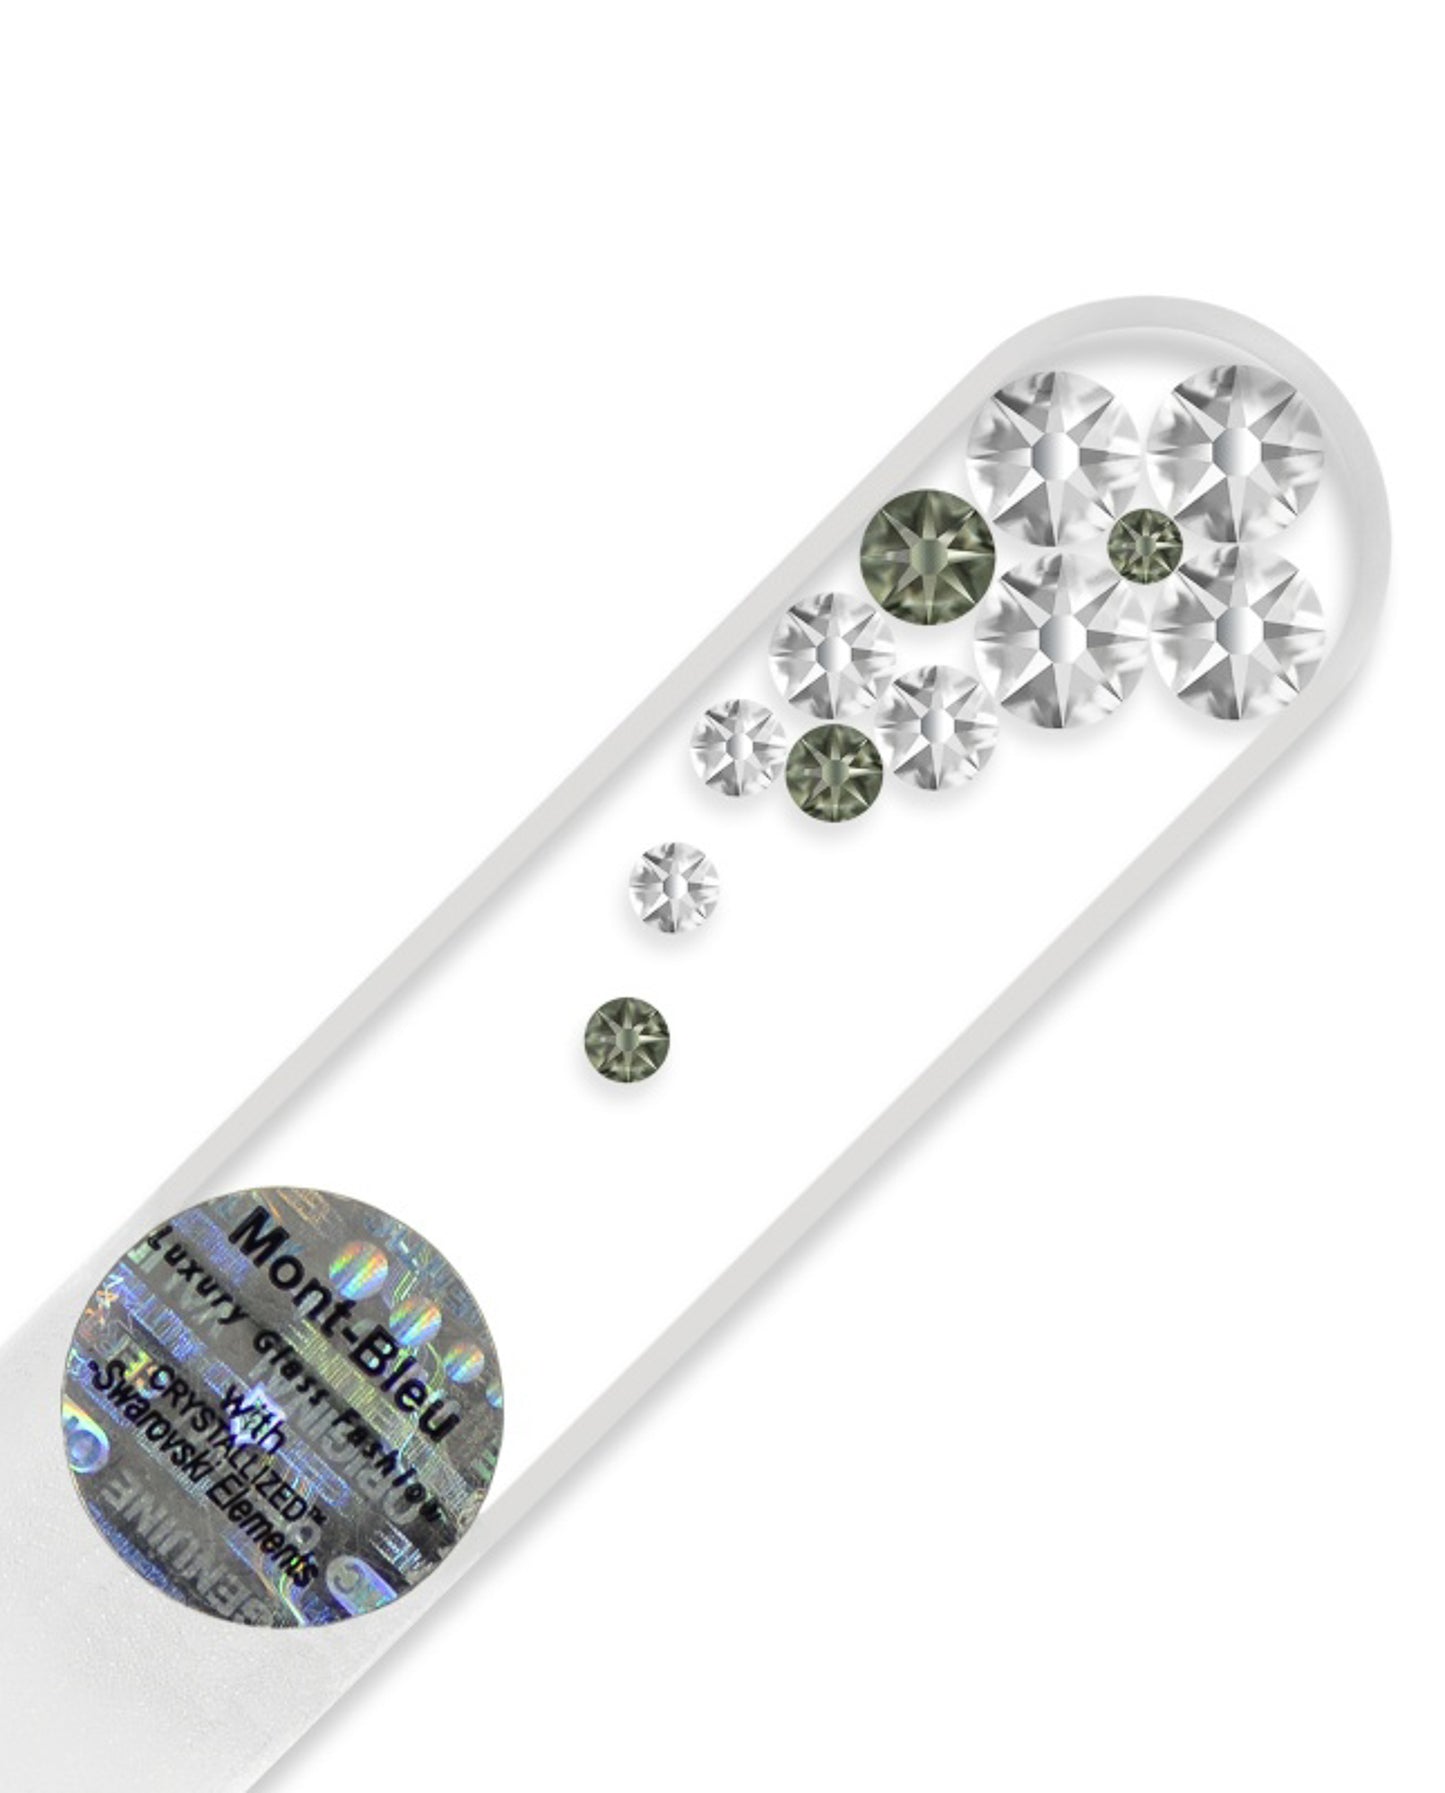 MINI Lima BUBBLES cristal Checo elaborada con cristal Swarovski 9cm